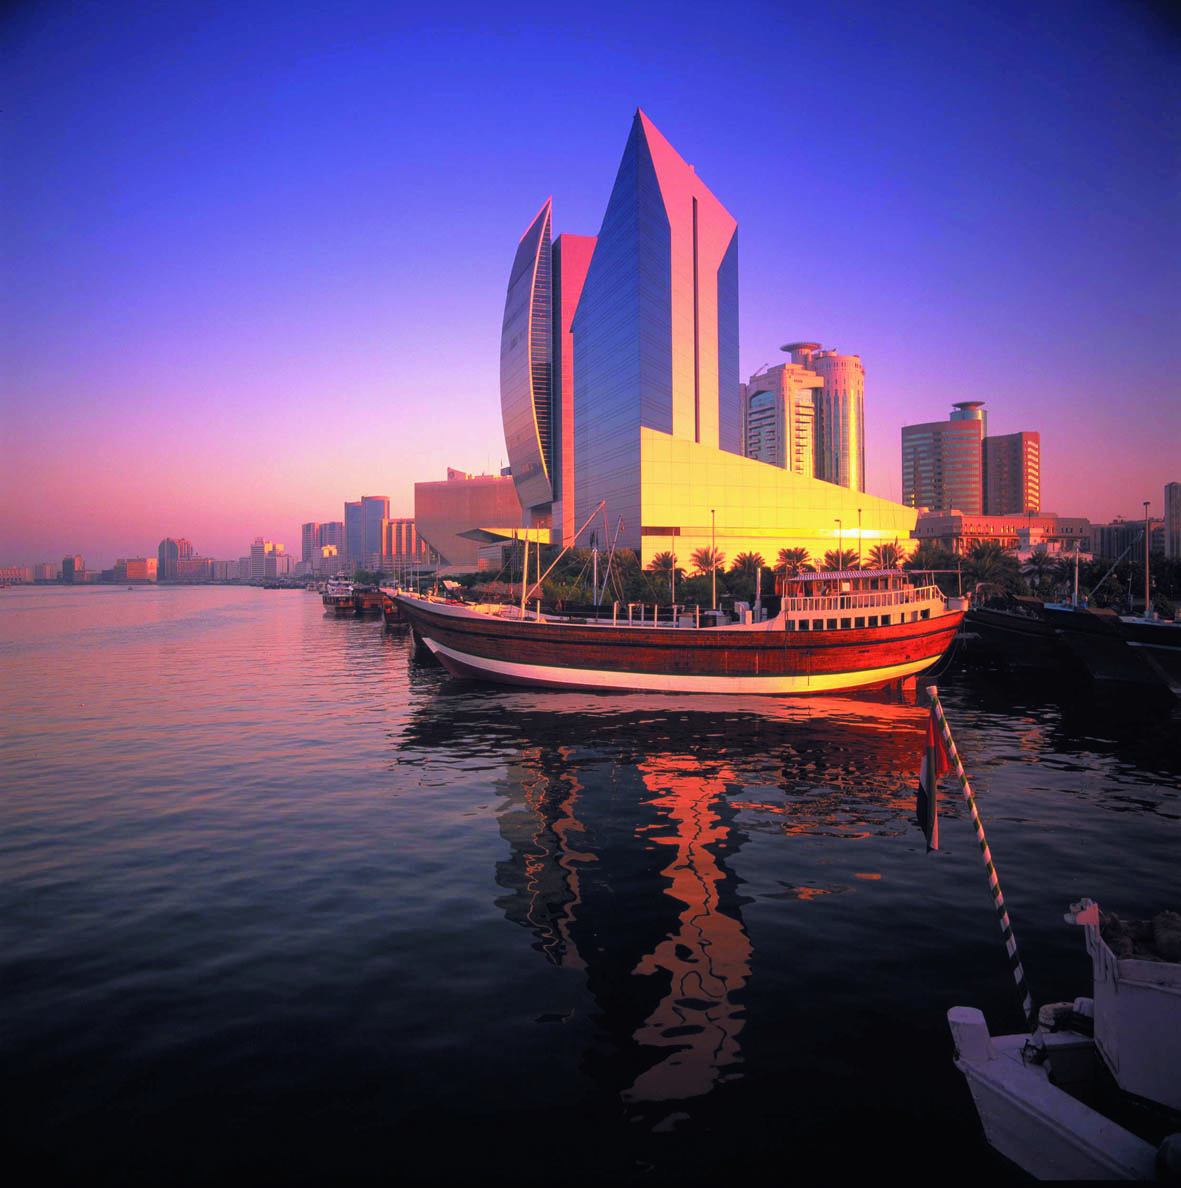 Aumentano i visitatori a Dubai: + 13,6% nel 1° trimestre 2011